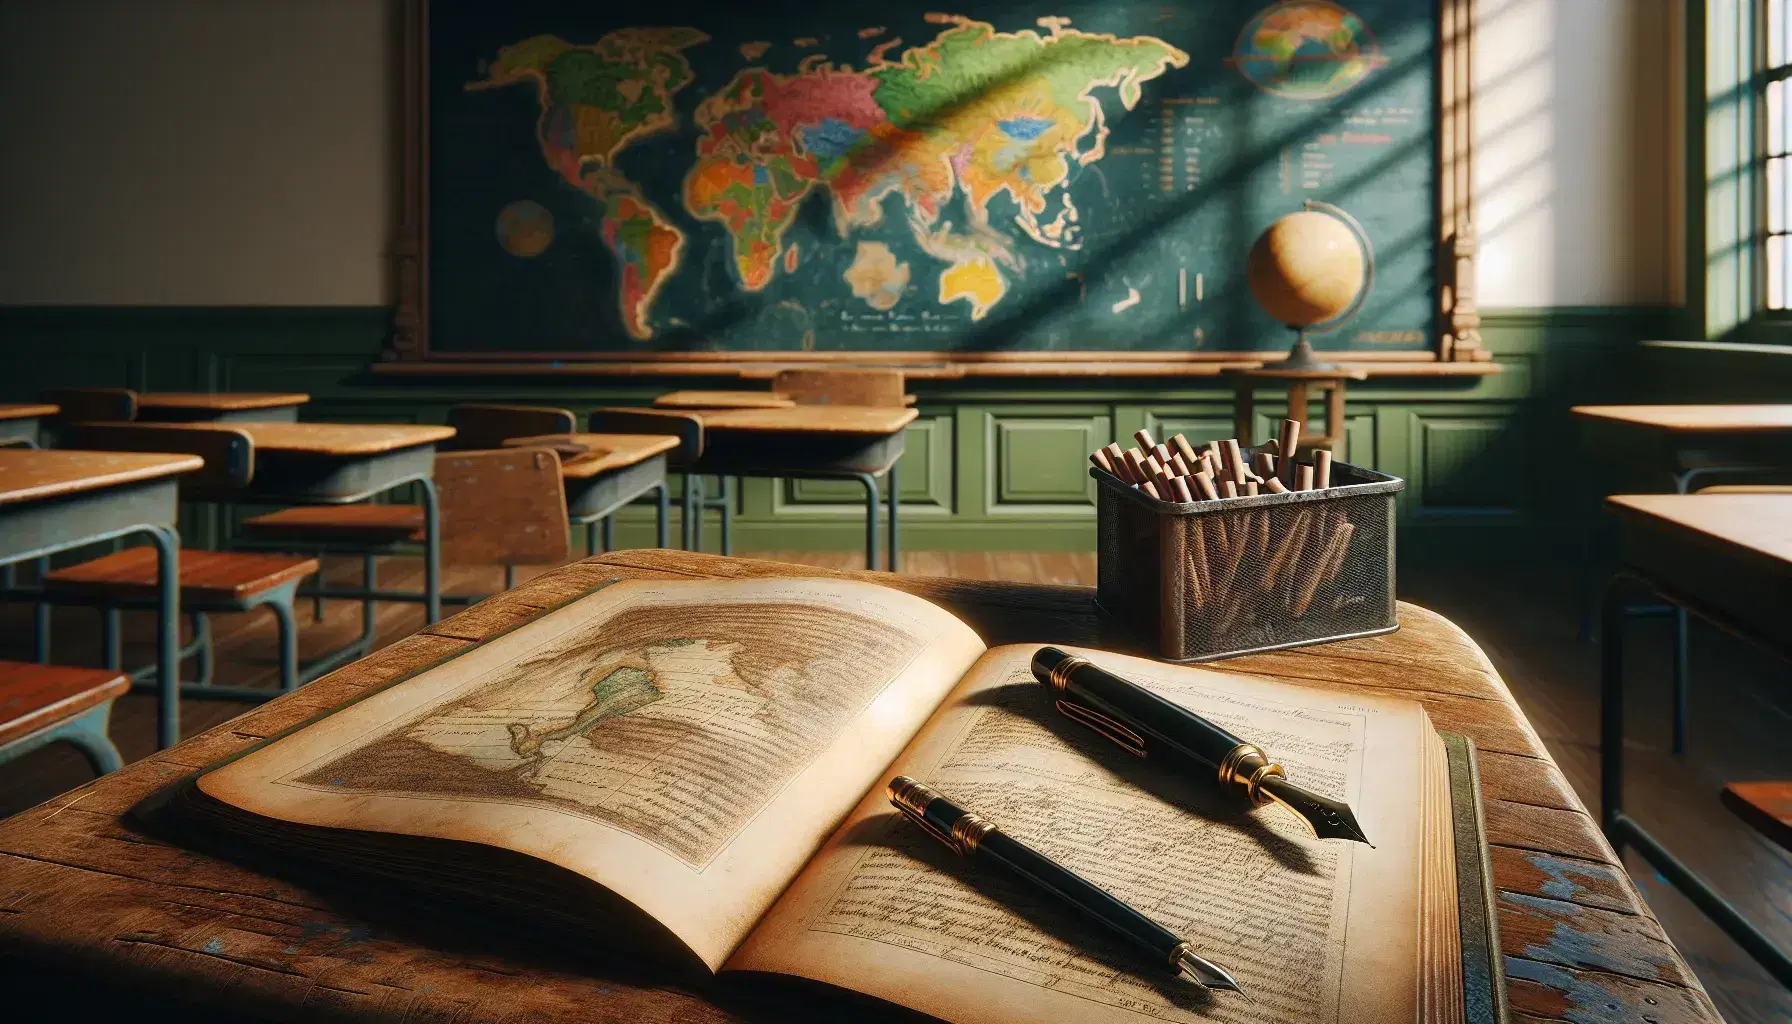 Scena tranquilla di un'aula scolastica con banco in legno, libro aperto, penna stilografica nera, lavagna verde e mappa geografica colorata.